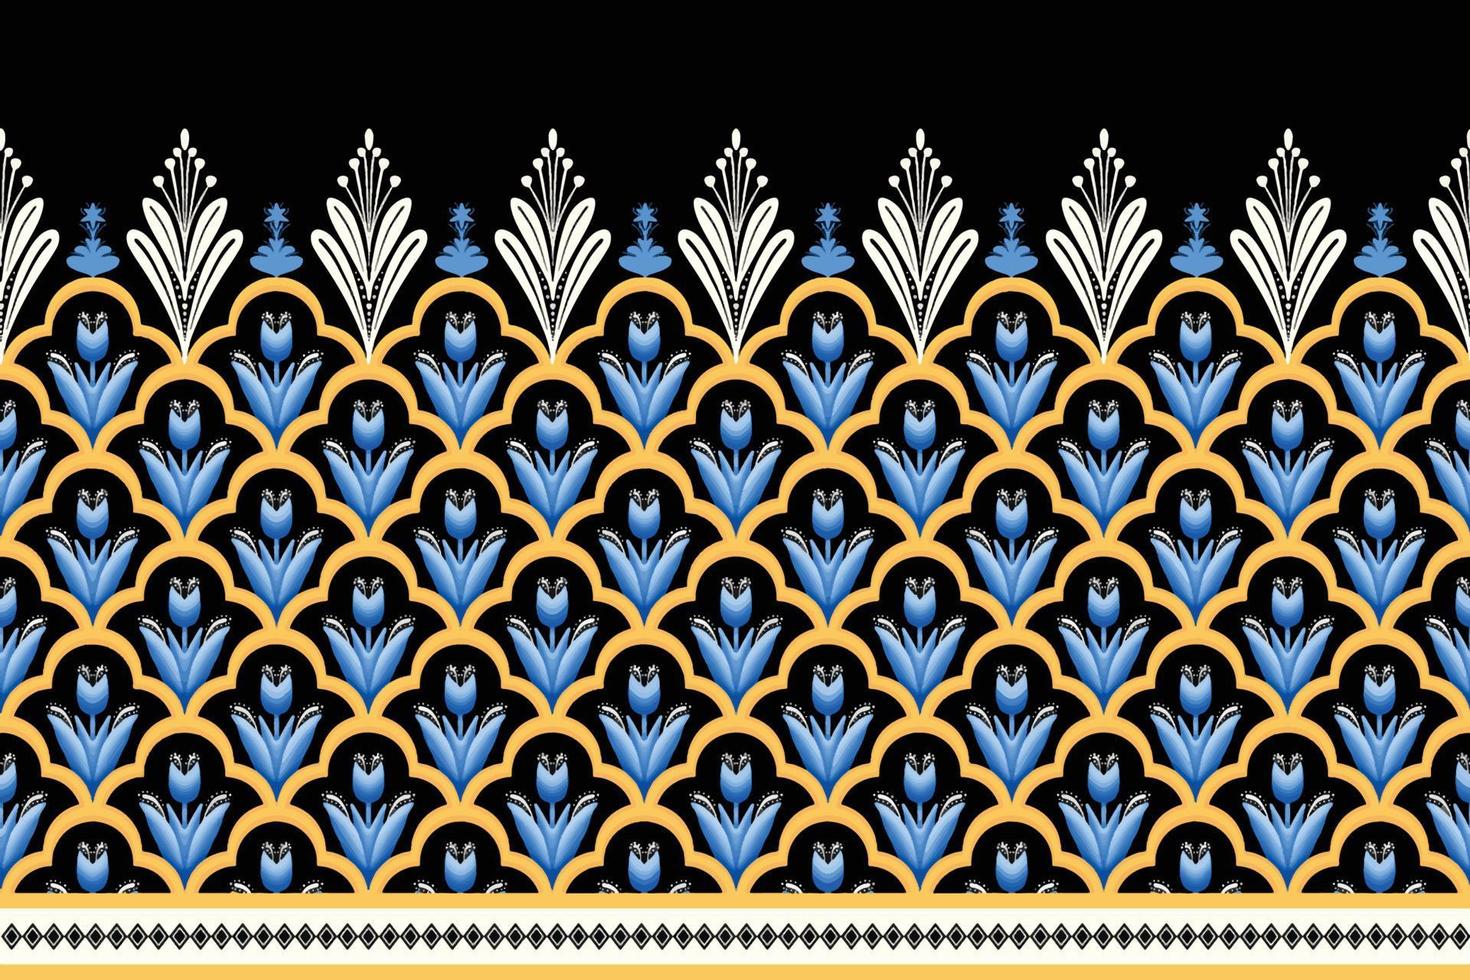 blauwe bloem op zwart, wit, geel geometrische etnische oosterse patroon traditioneel ontwerp voor achtergrond,tapijt,behang,kleding,inwikkeling,batik,stof, vector illustratie borduurstijl